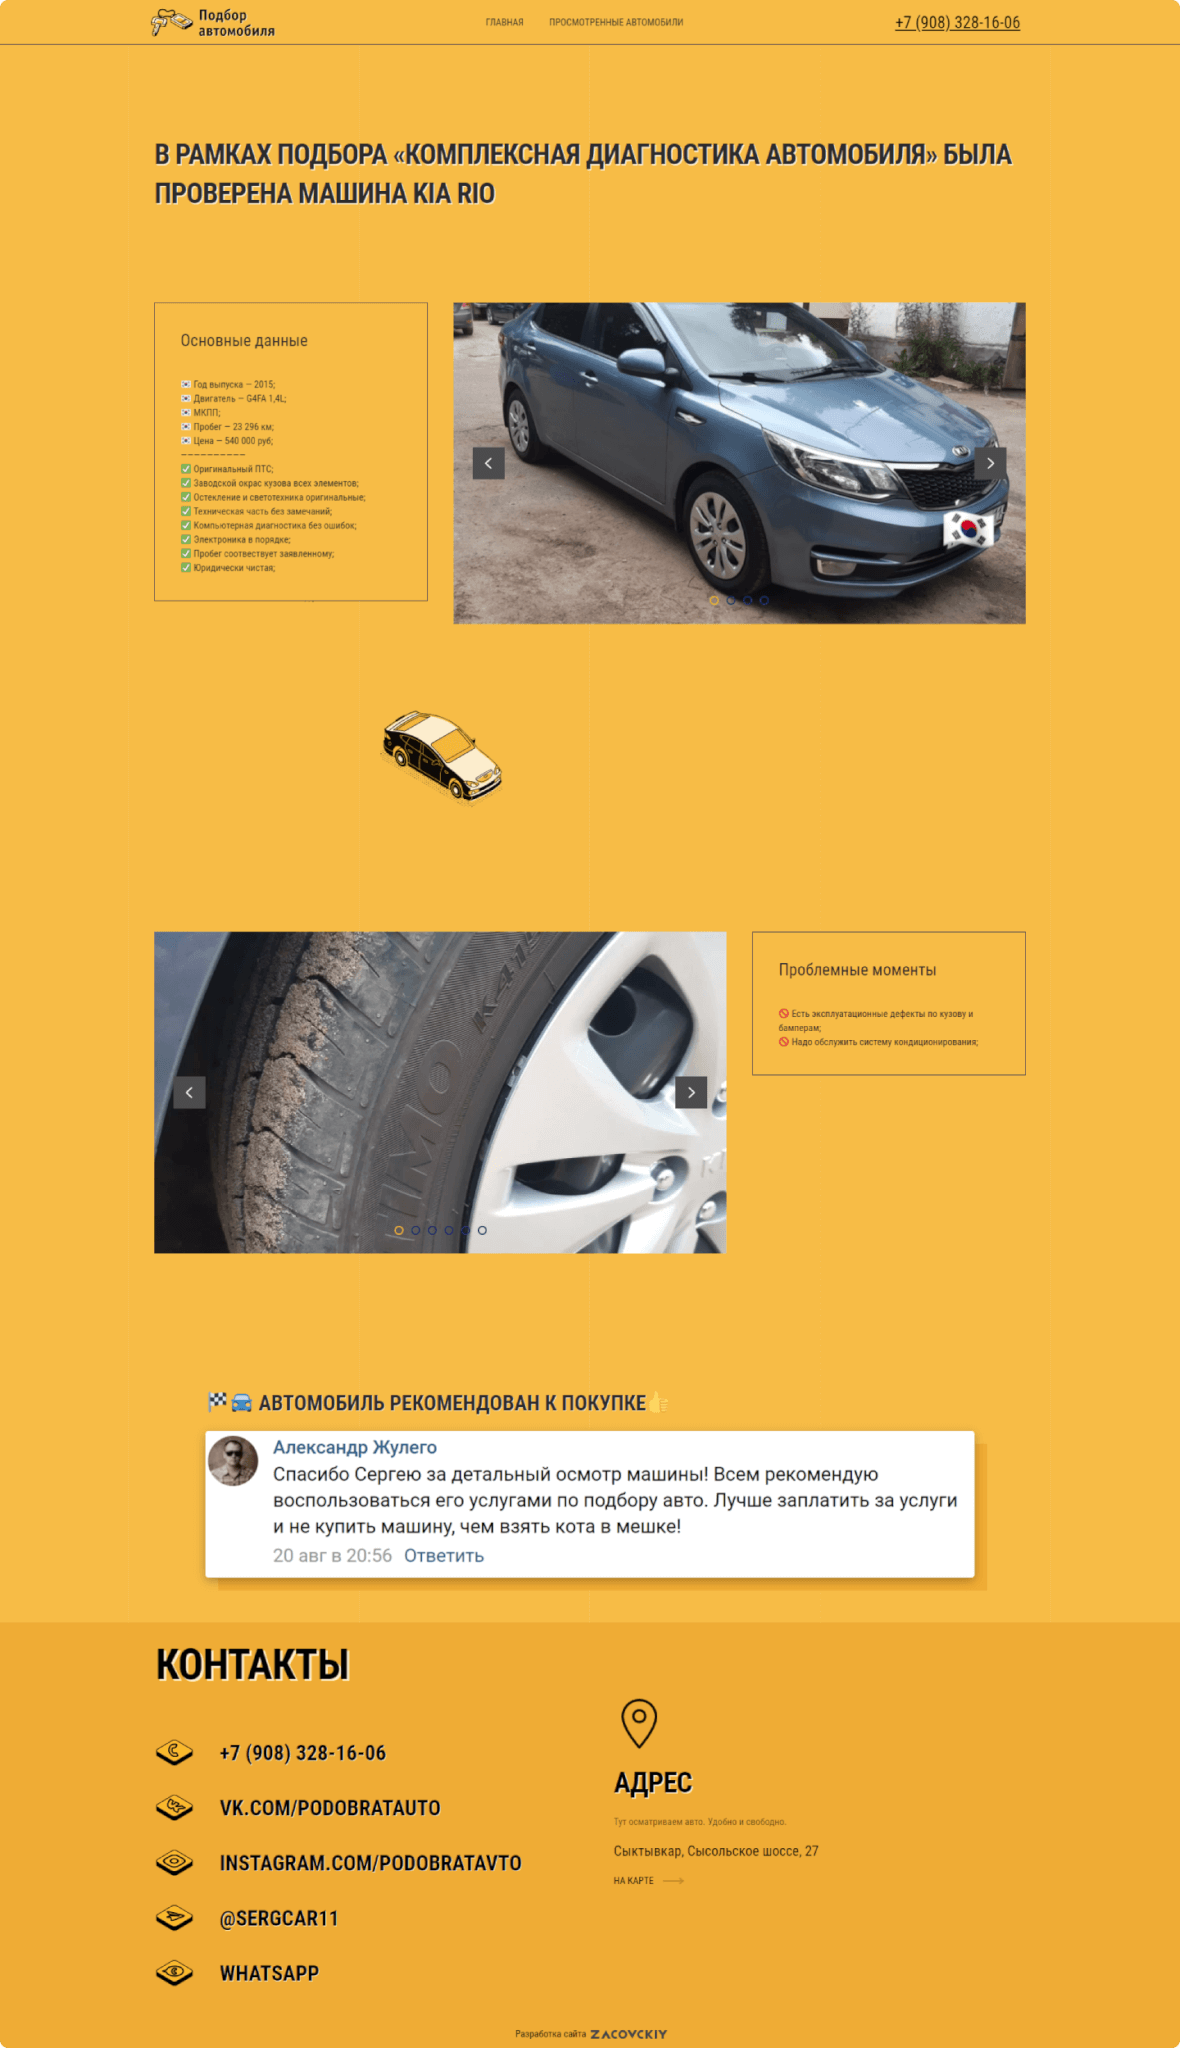 Разработка логотипа и сайта для "Подбор автомобилей"